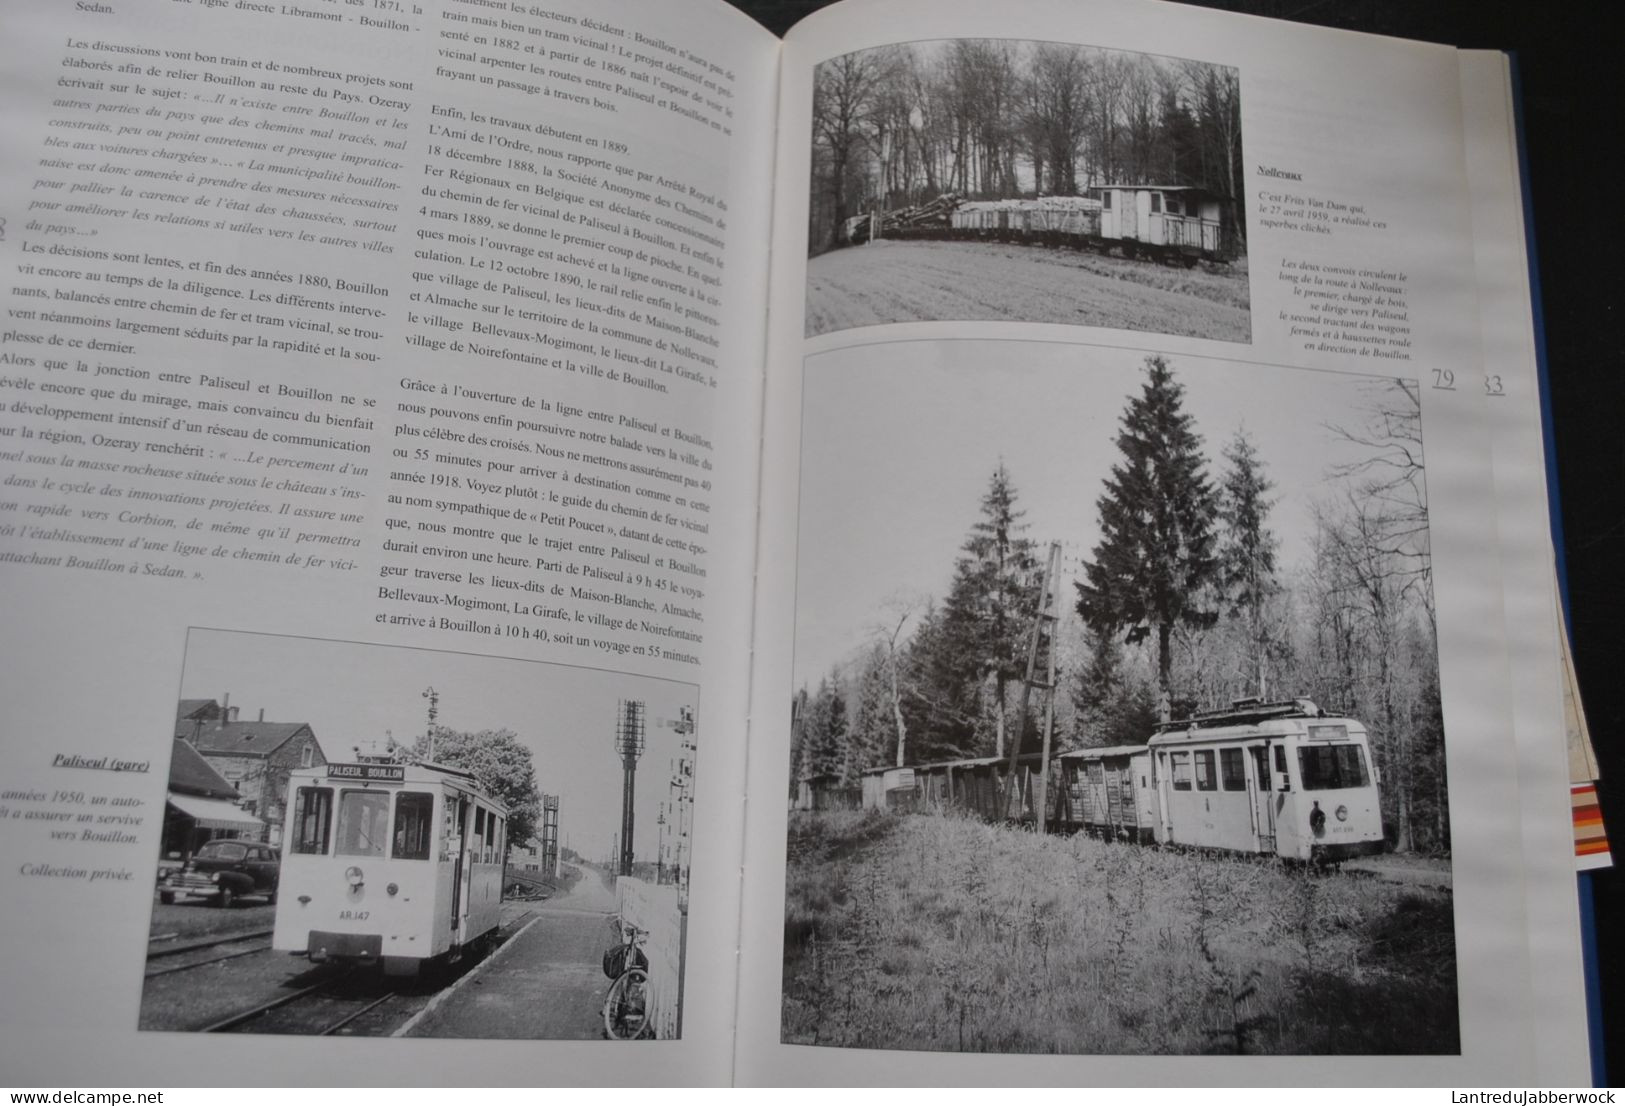 Images et nostalgie entre Amberloup et Pussemange SNCV SNCB tram Chemin de fer Freux Corbion Saint-Hubert Libin Maissin